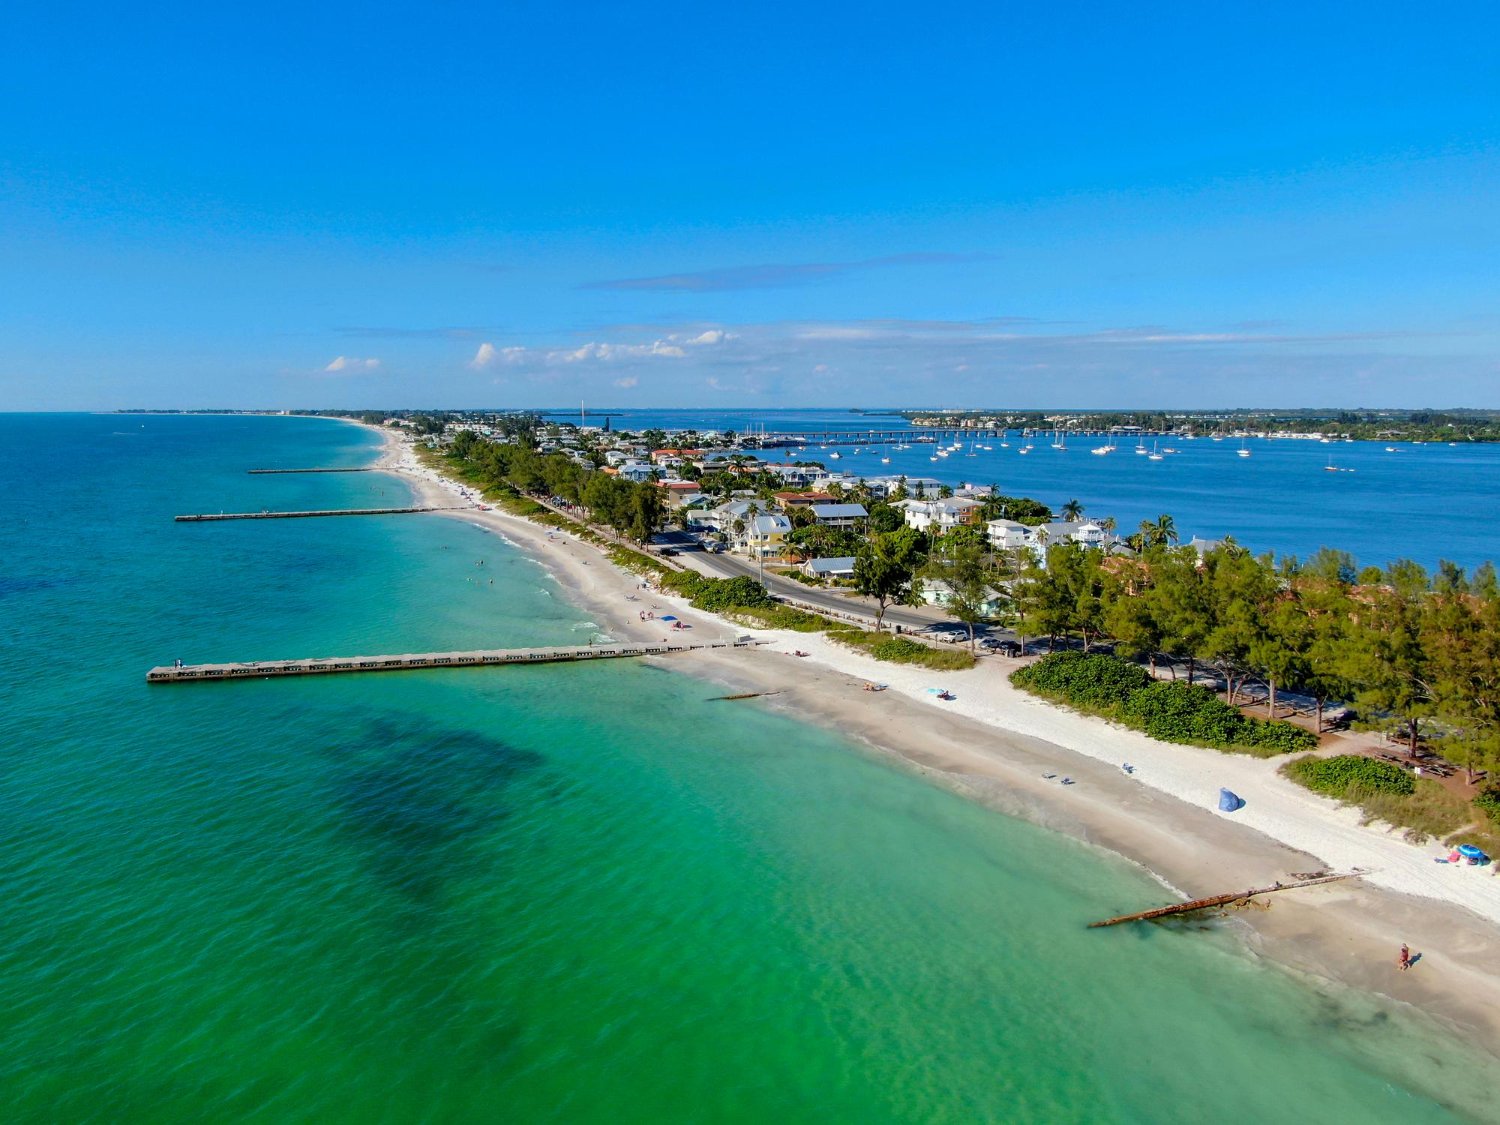 Налоги на недвижимость во Флориде: что надо знать инвестору?